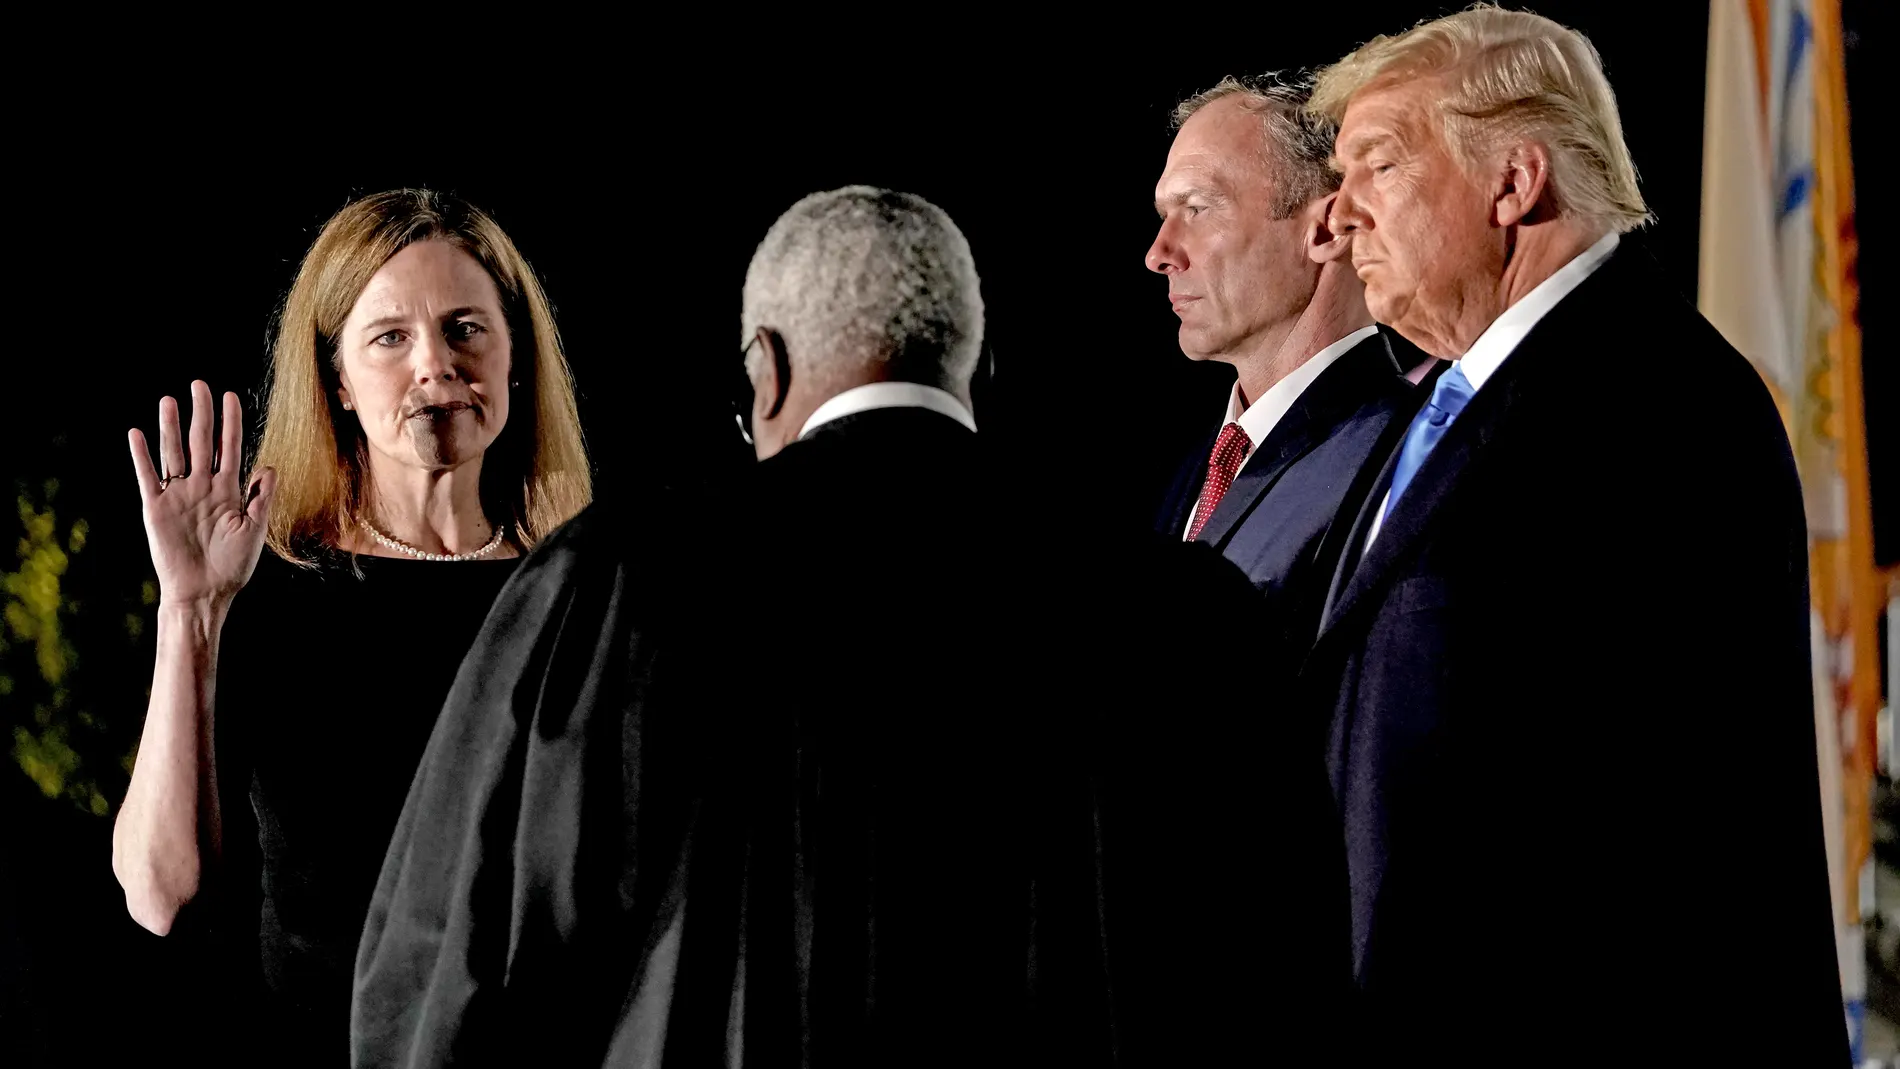 Amy Coney Barrett jura su puesto en la corte suprema de los EE.UU junto al presidente Trump anoche en la Casa Blanca.